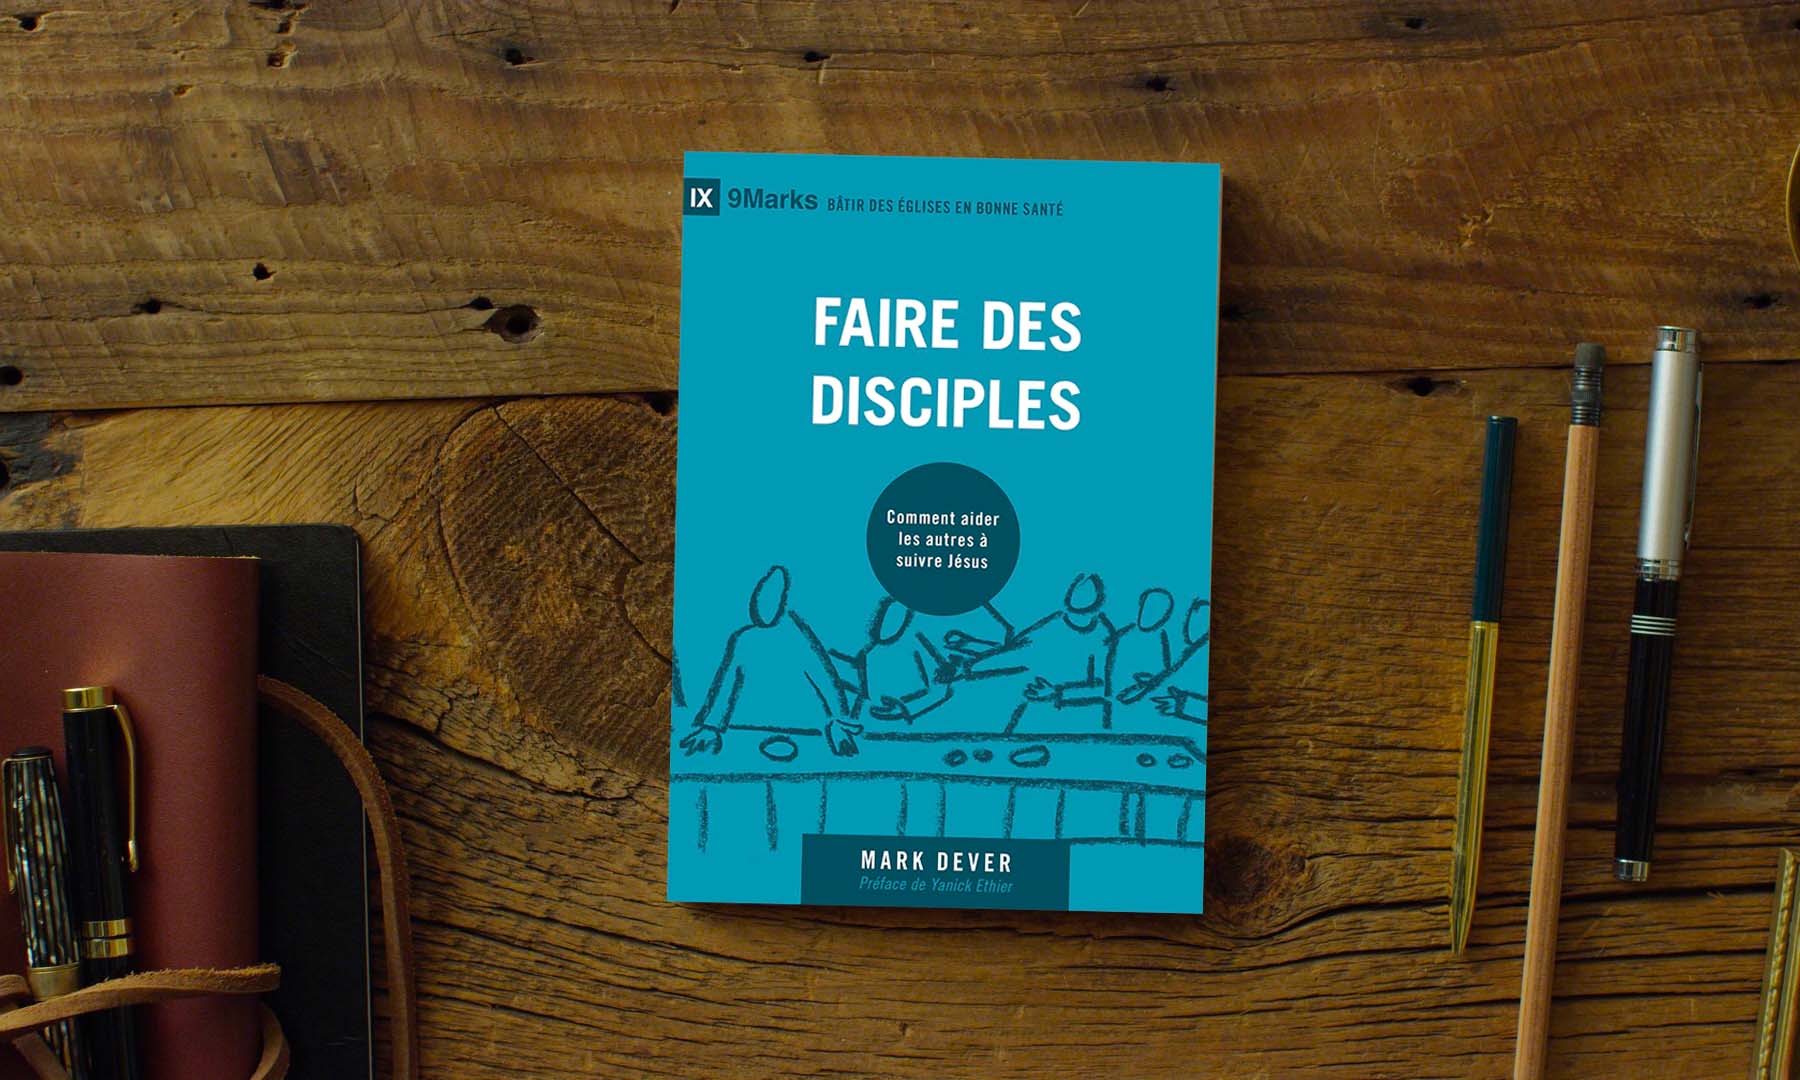 Le livre que Yannick Éthier recommande pour la formation de disciples